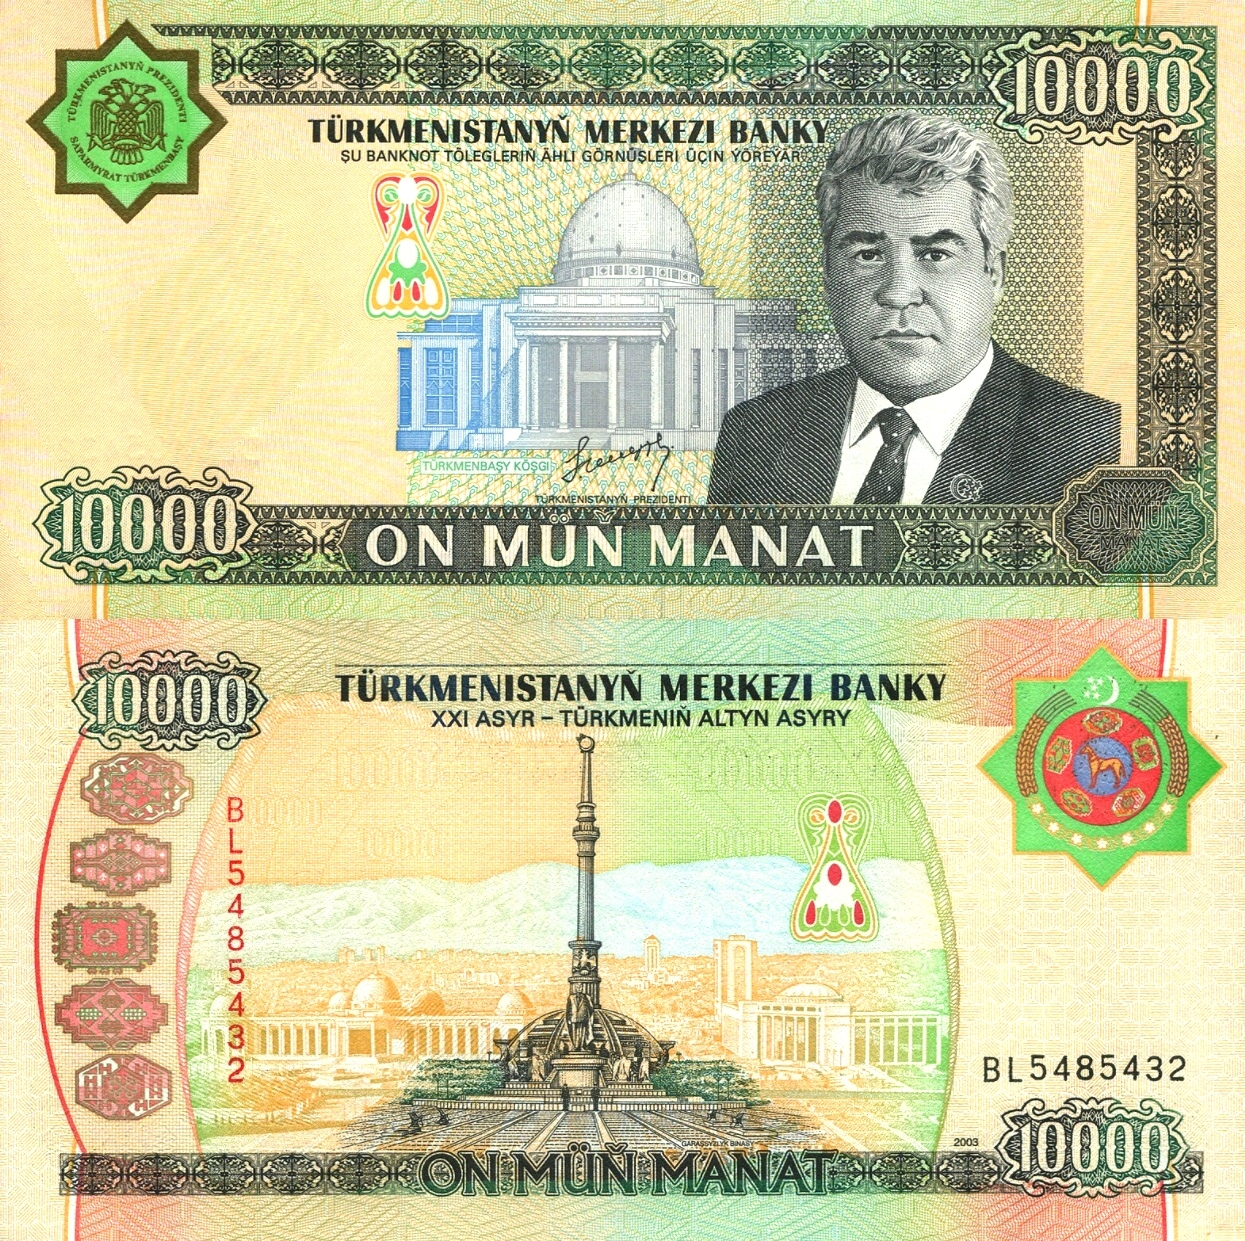 # TURKMENISTAN - 10000 MANAT - 2003 - P-15 - UNC